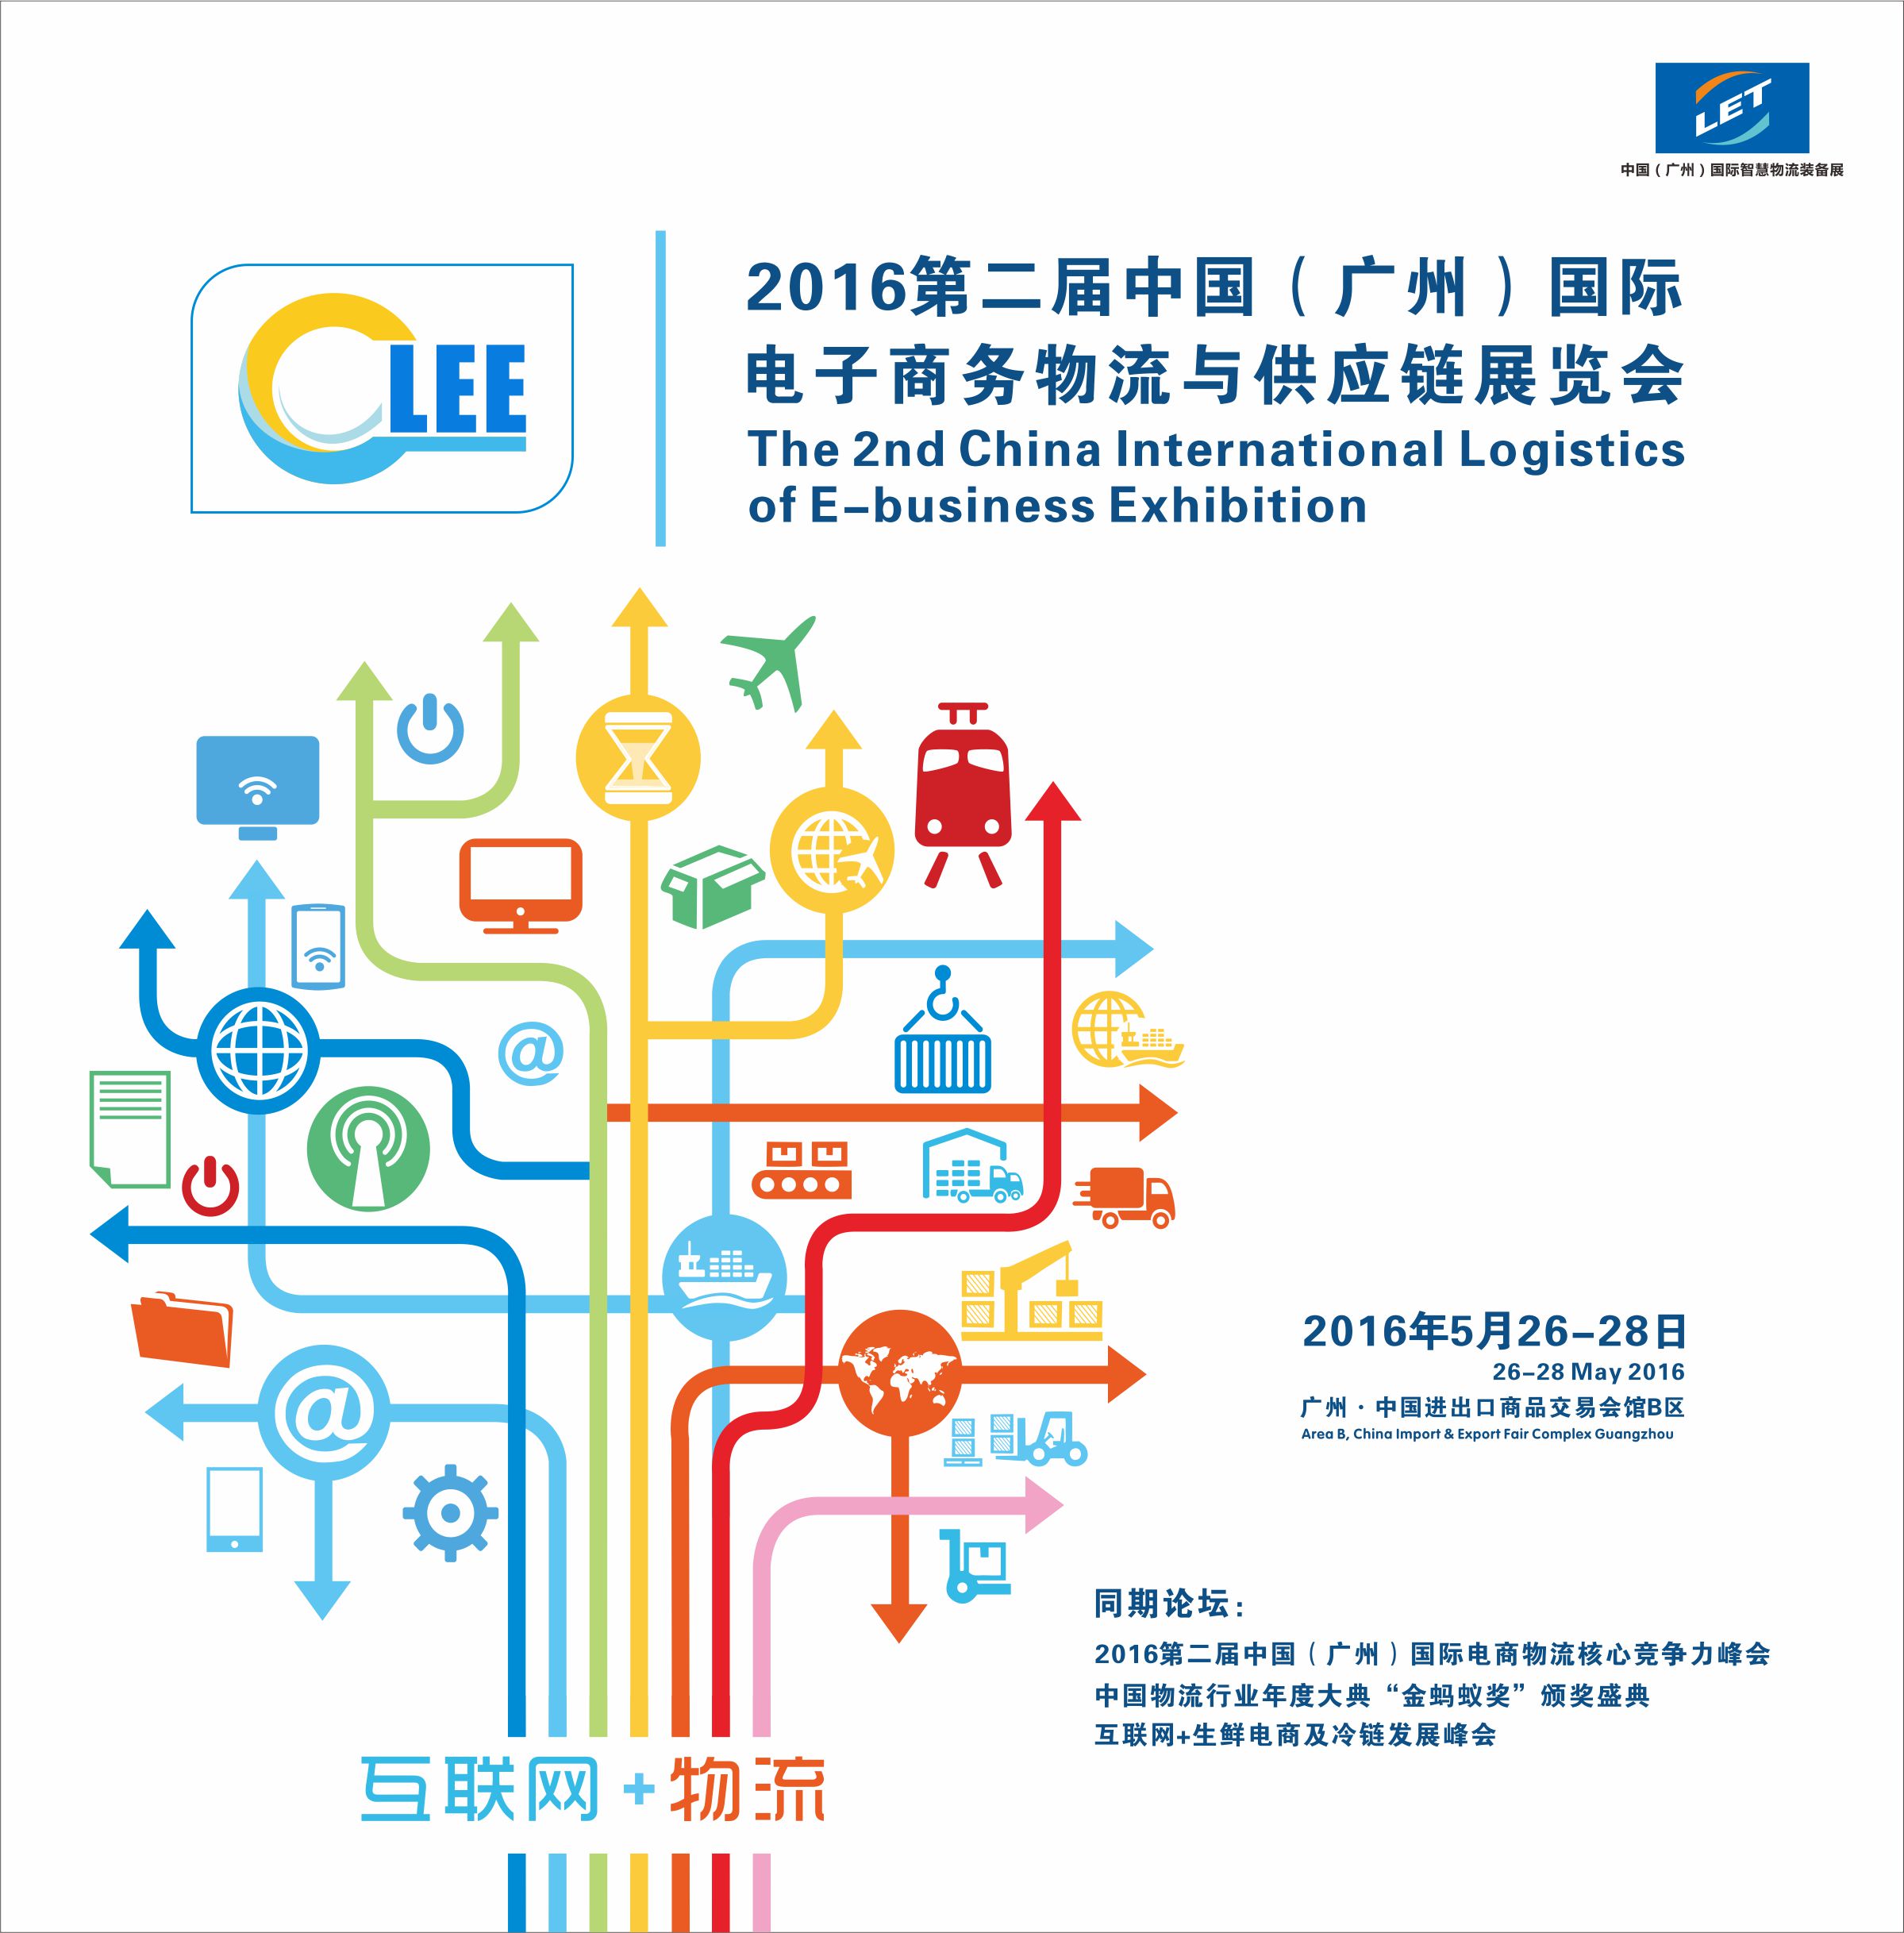 2016第二届中国（广州）国际电商物流与供应链展览会将在5月26-28举行